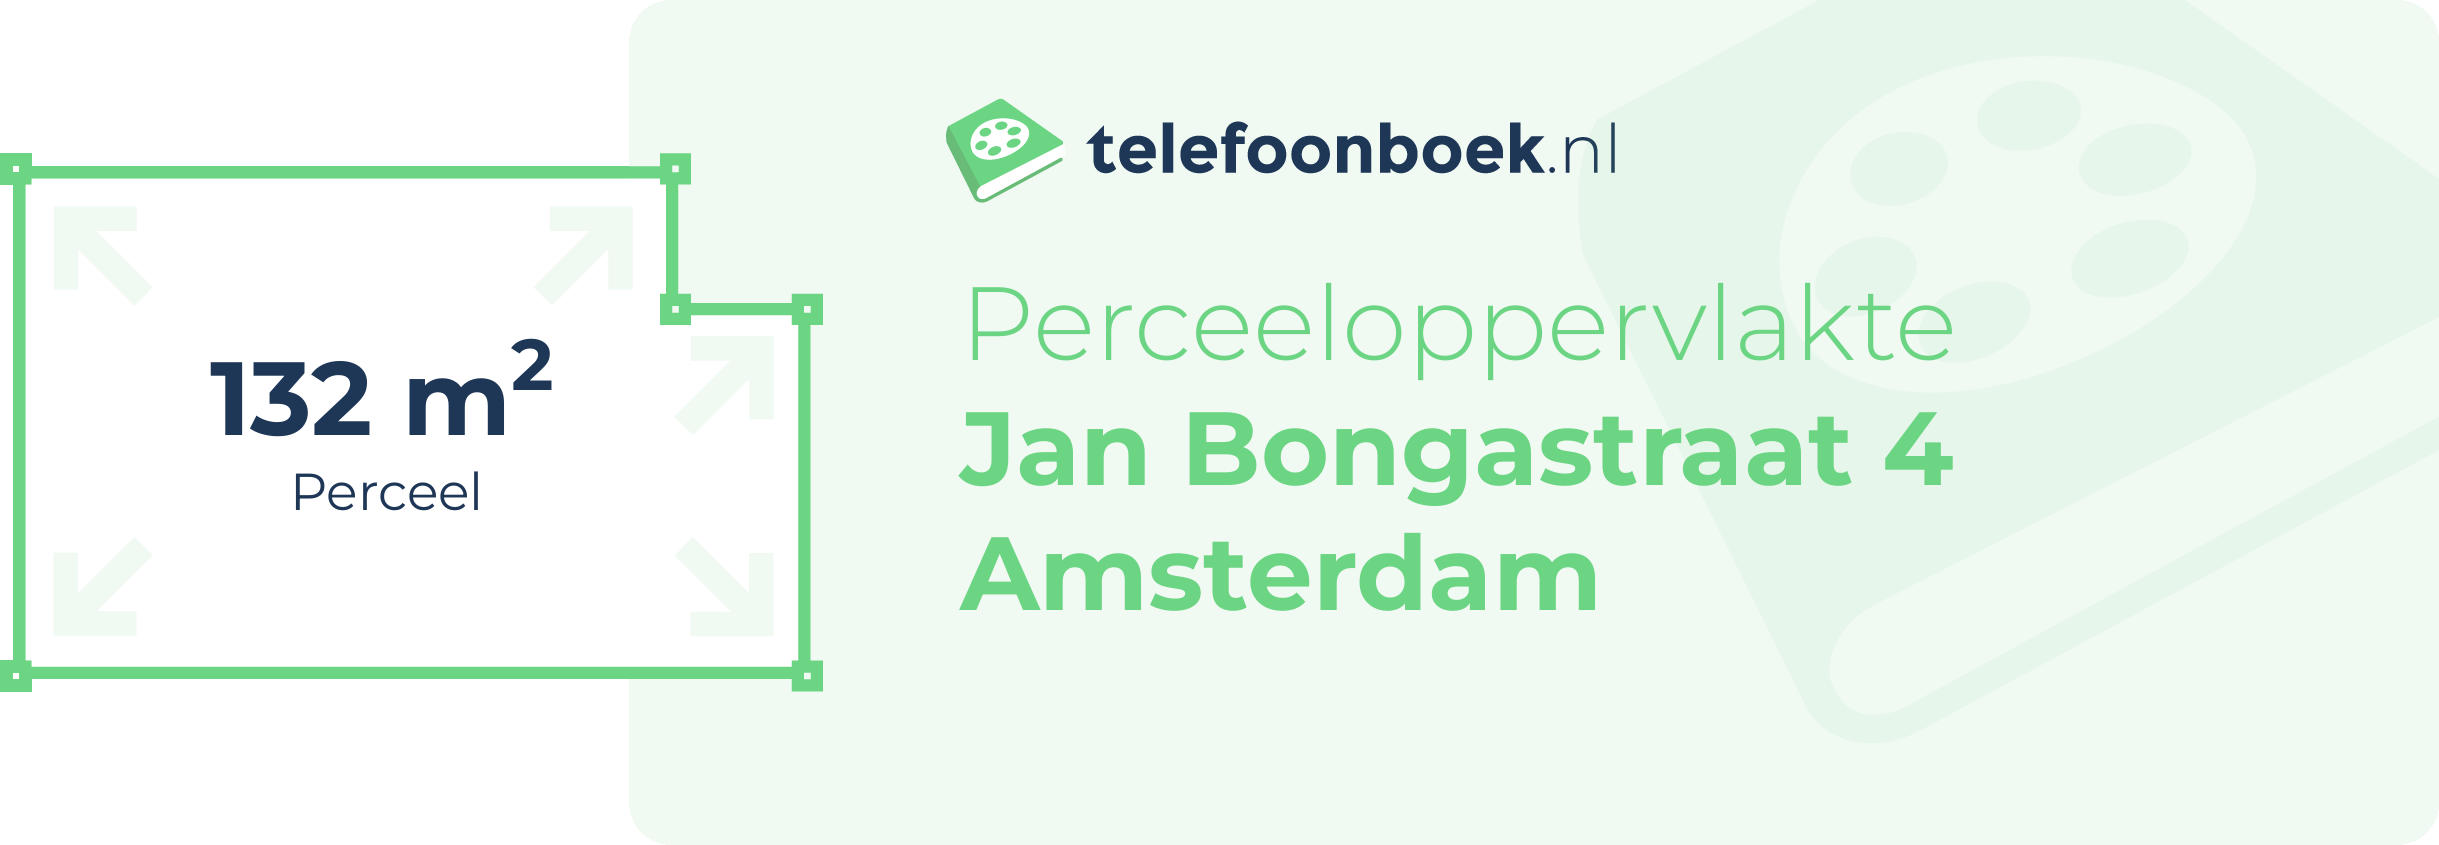 Perceeloppervlakte Jan Bongastraat 4 Amsterdam